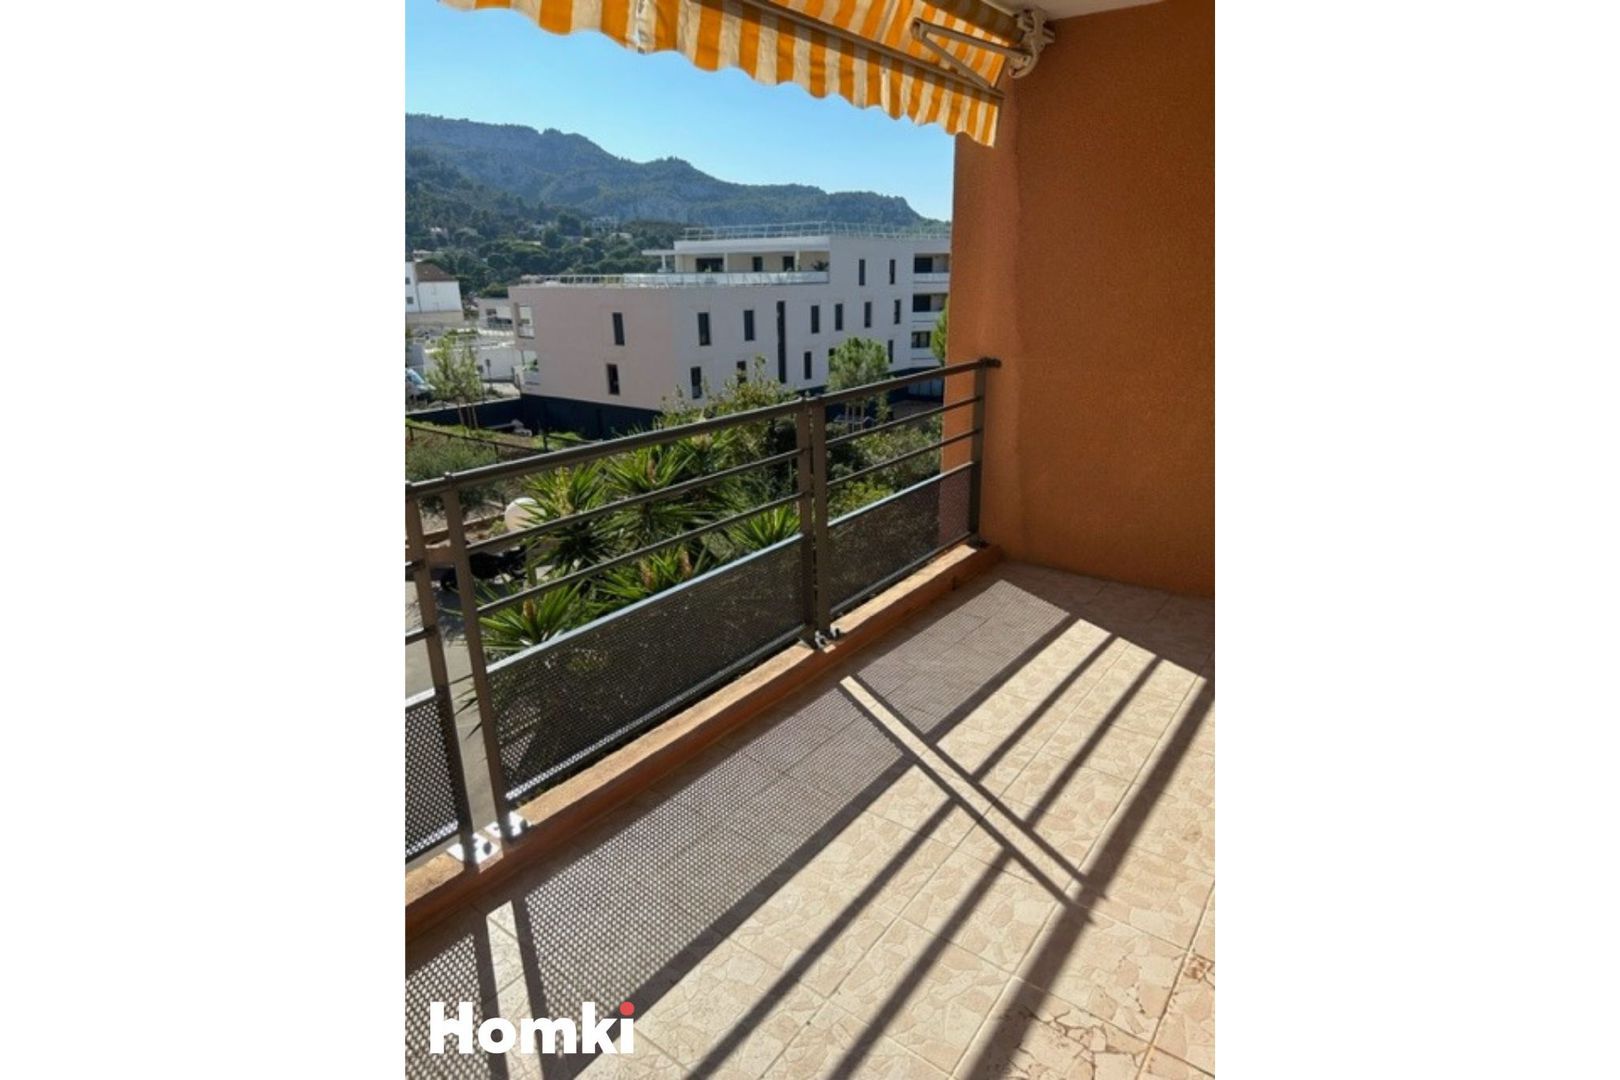 Homki - Vente Appartement  de 35.0 m² à Marseille 13009